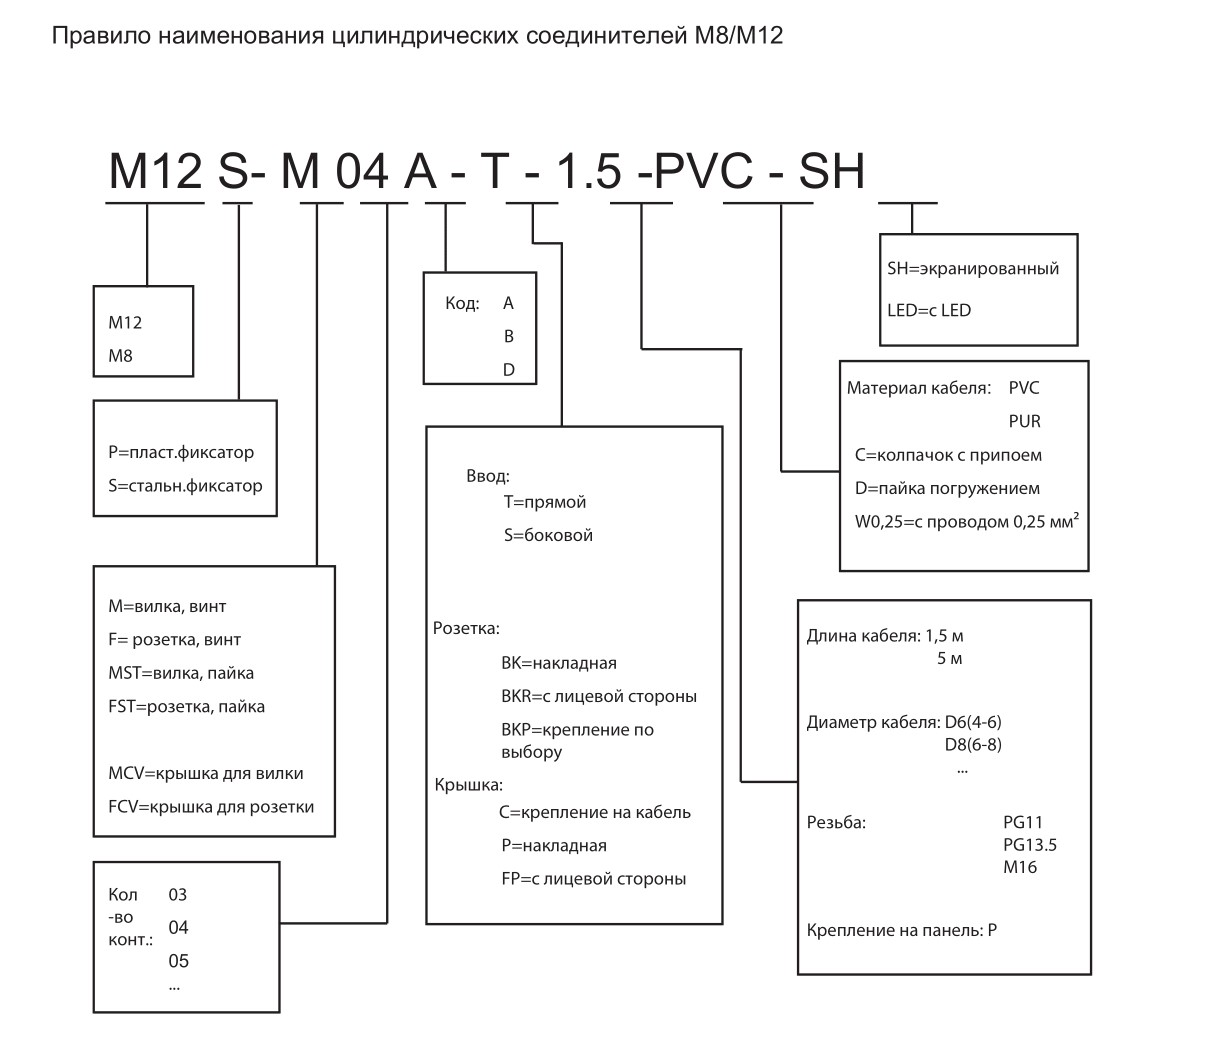 Цилиндрический соединитель-вилка с кабелем M12-M12A-S-5.0-PVC-SH 1630125012002: Структура обозначения